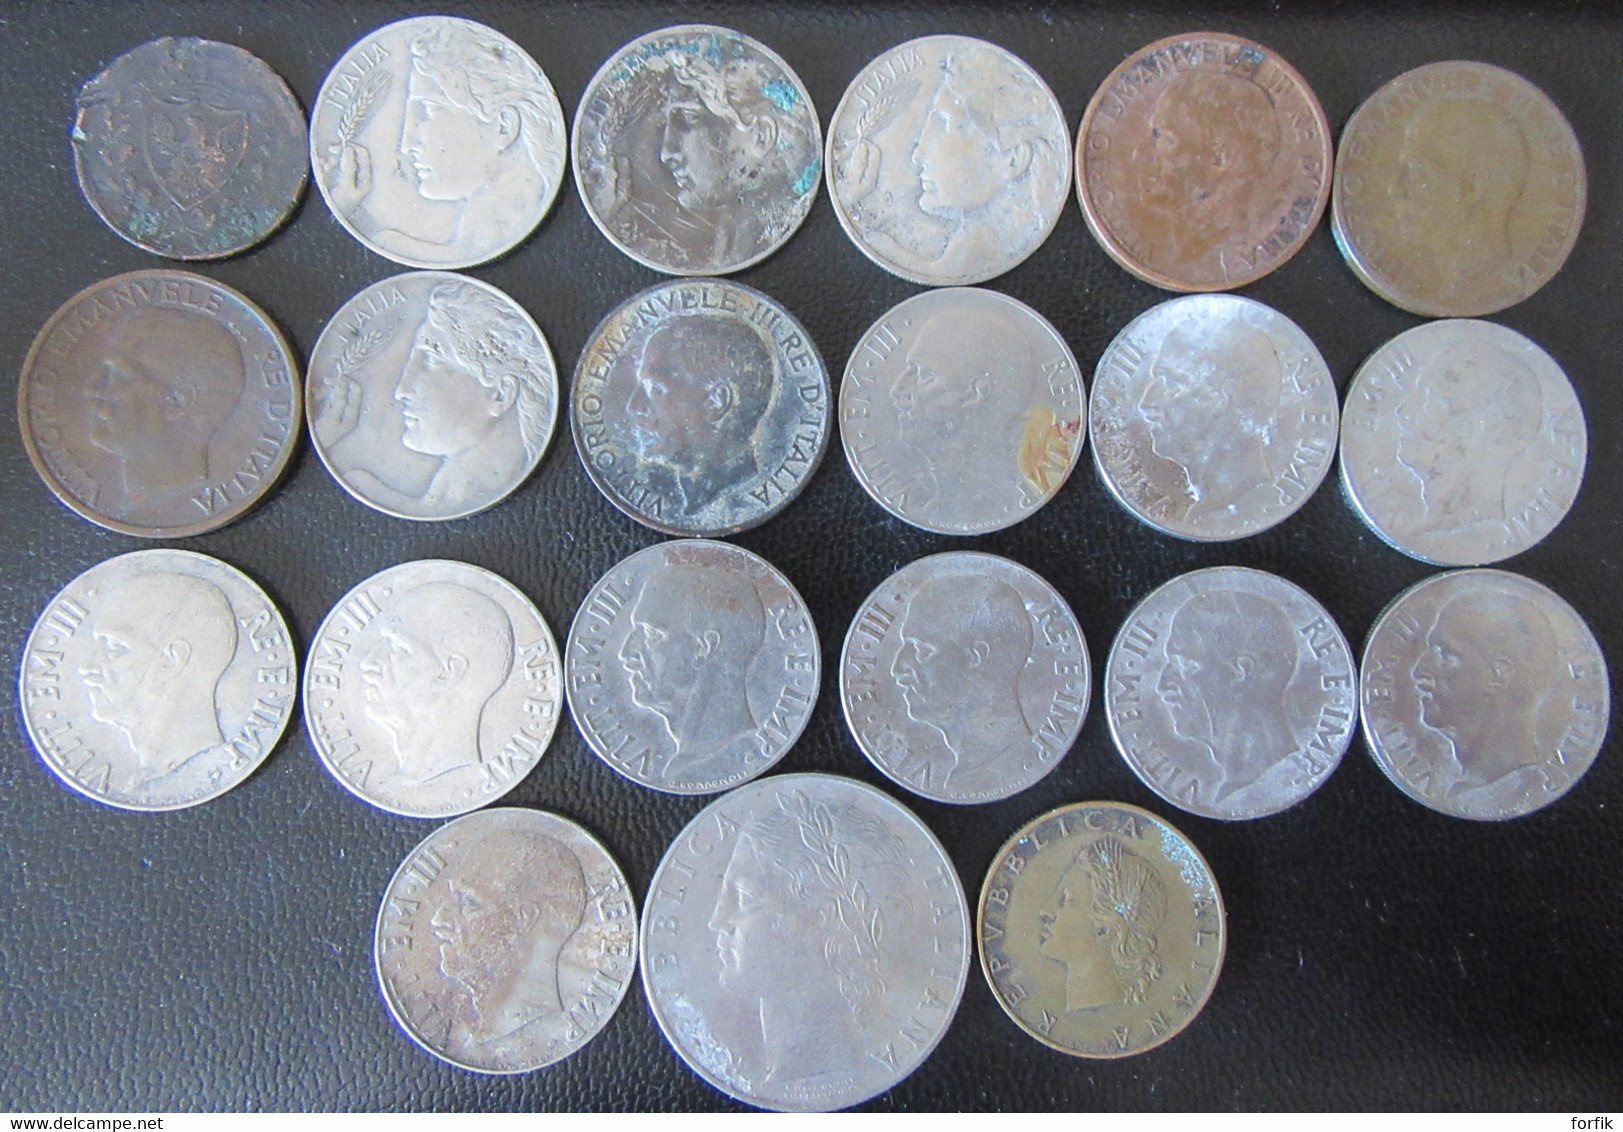 Italie / Italia - Lot De 21 Monnaies Entre 1826 Et 1958 Dont 1 Centesimo 1826 (état Moyen) - Collections